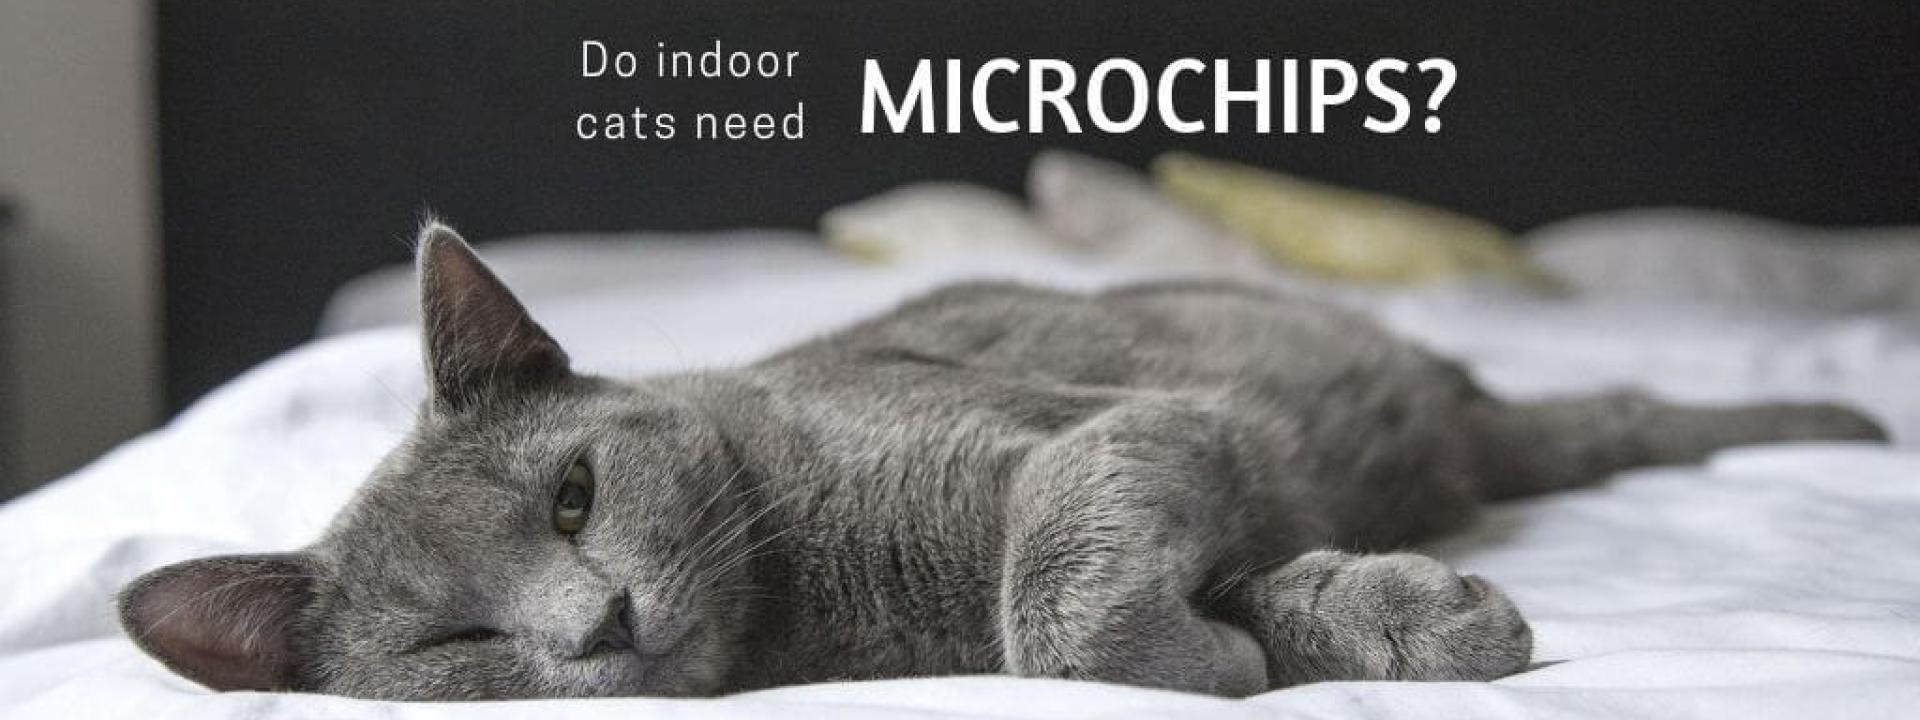 indoor-cat-microchips-blog-header.jpg